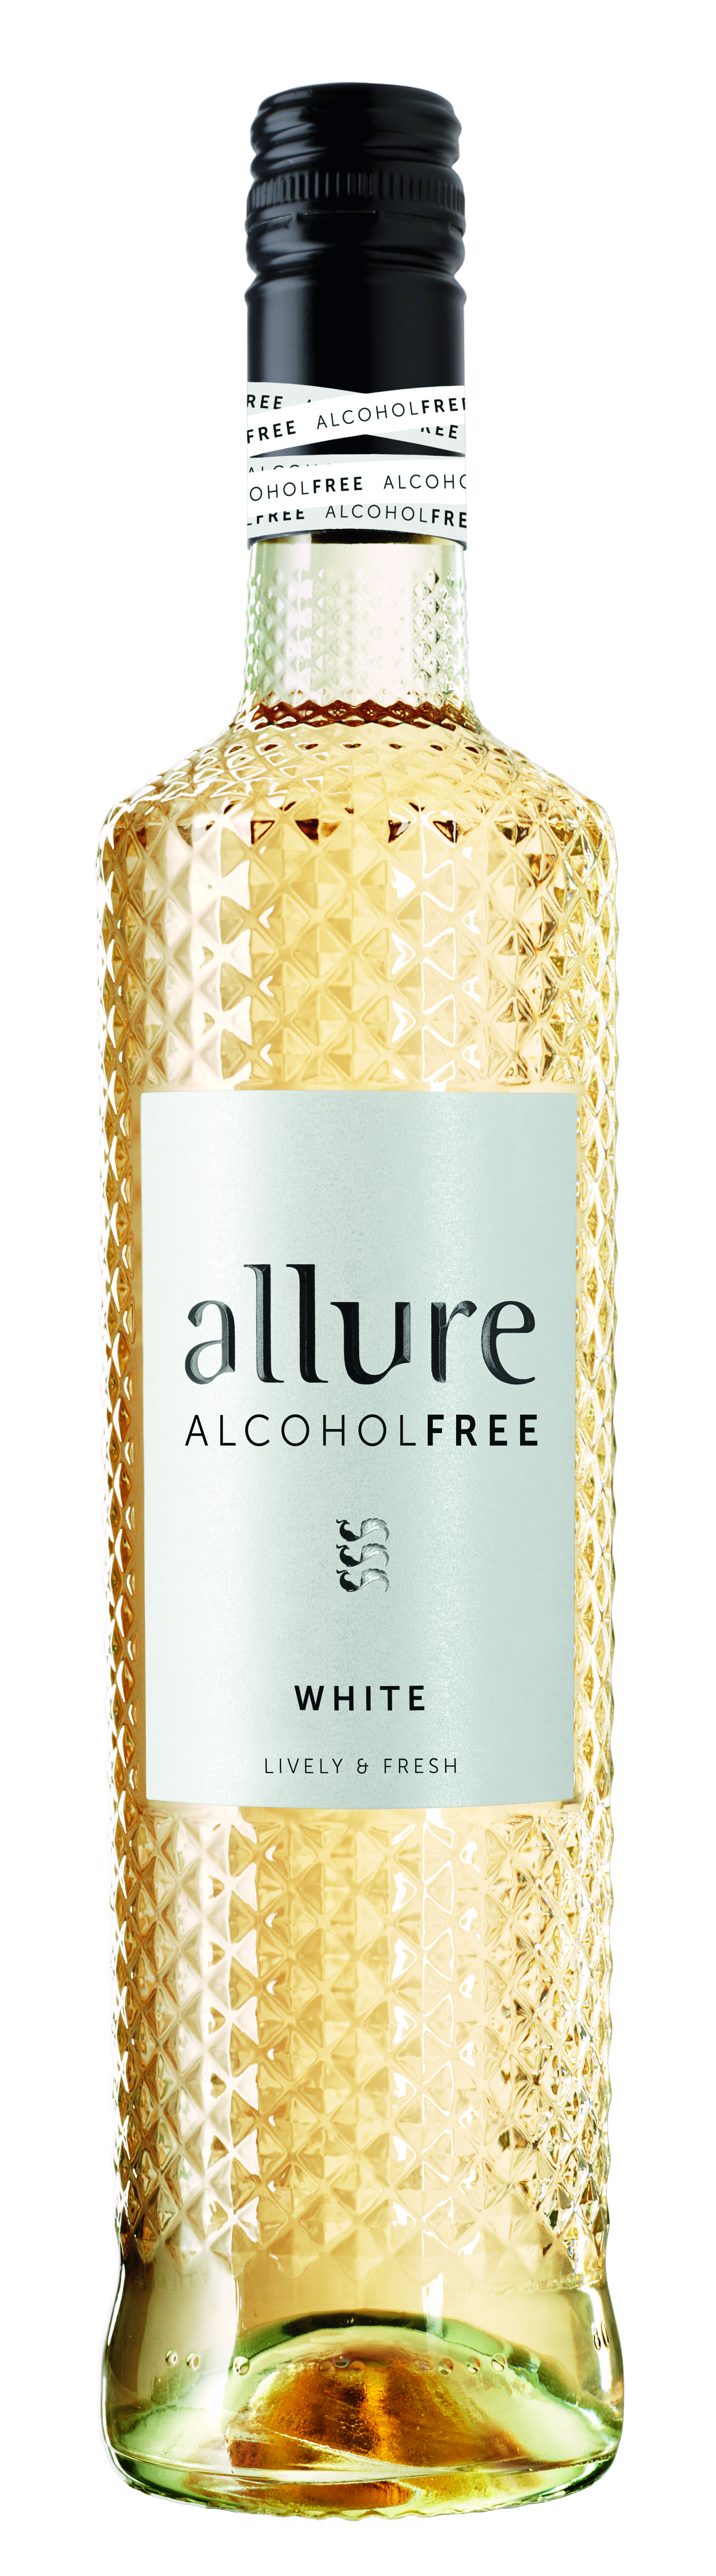 Allure - alkoholfreier Weißwein 0,75l